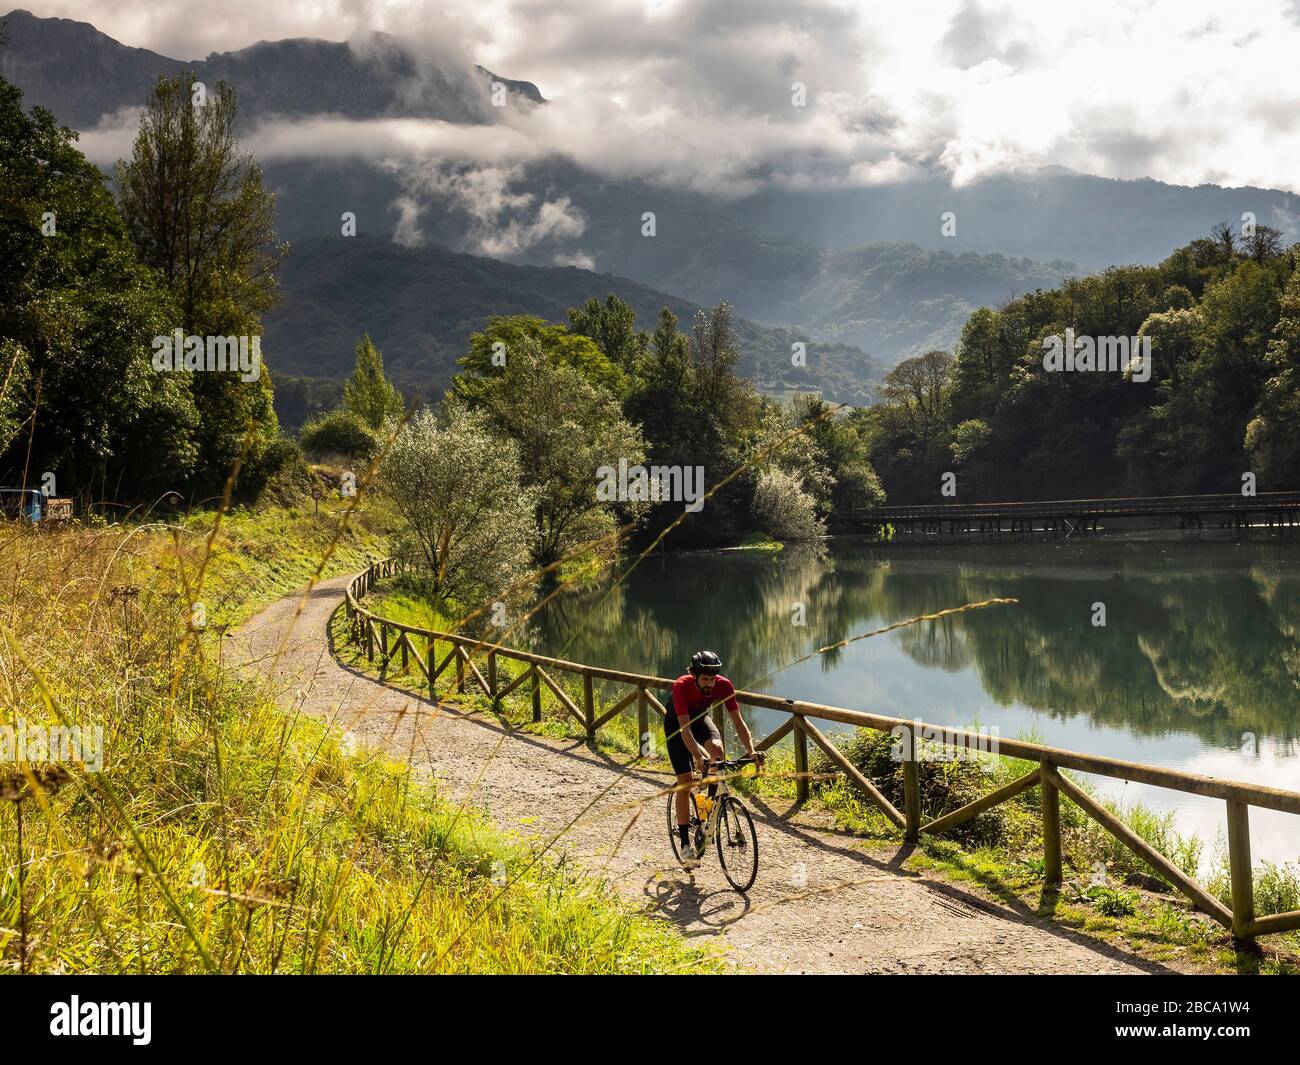 Straßenradsport in Asturien, Nordspanien. Rennradrennfahrer auf dem See "Embalse de Valdemurrio" in den Bergen in der Nähe von Proaza Principado de Asturias, Spa Stockfoto